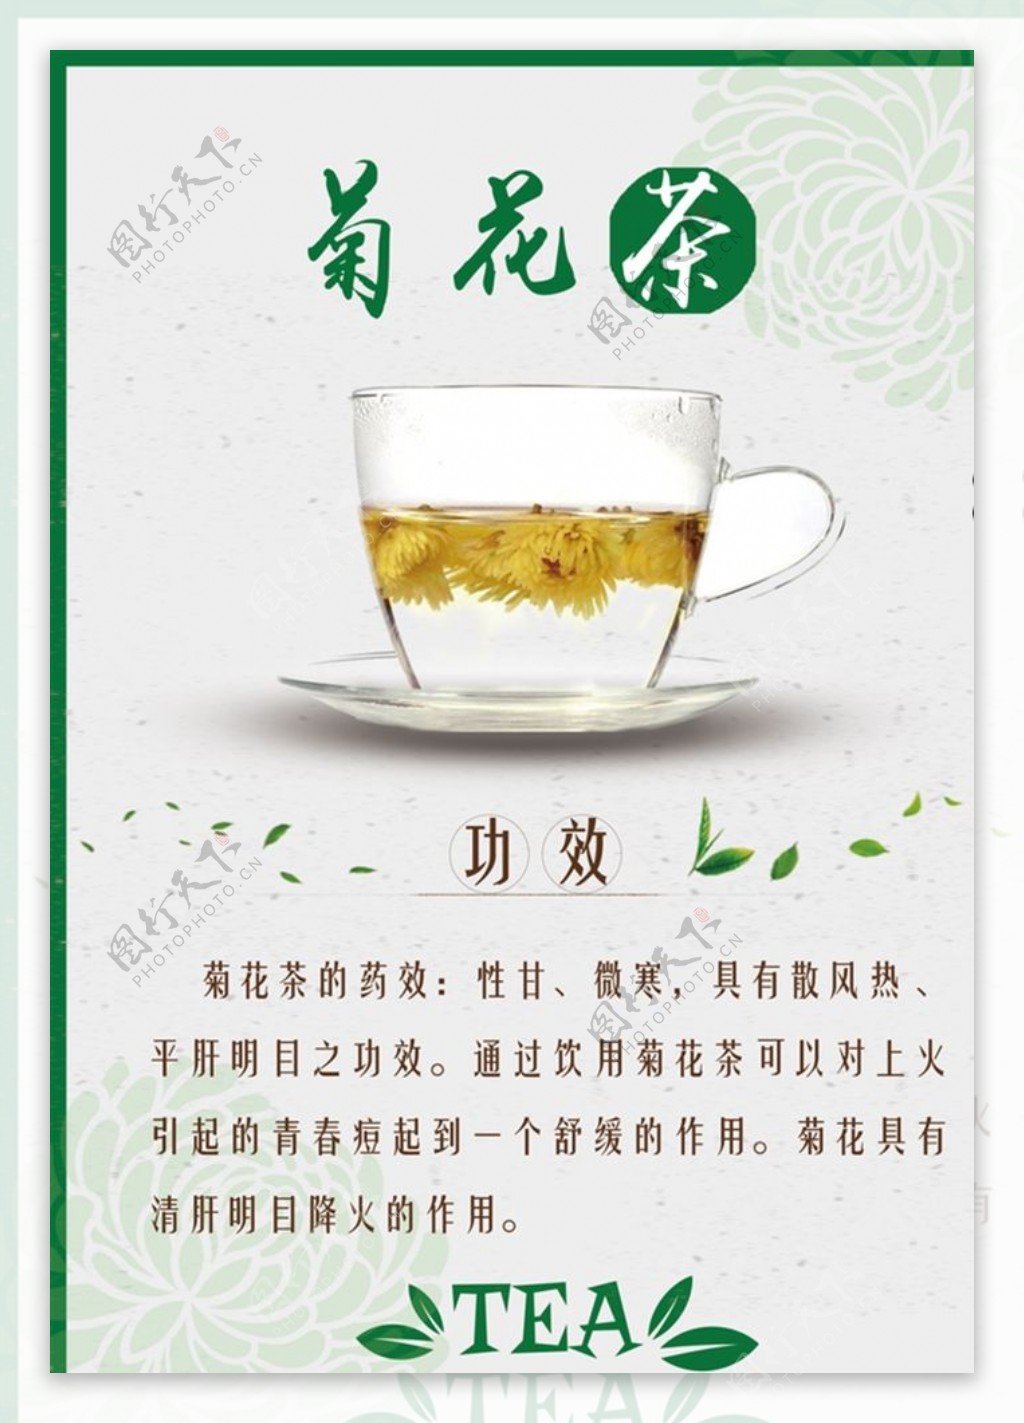 菊花茶茶水单台卡图片